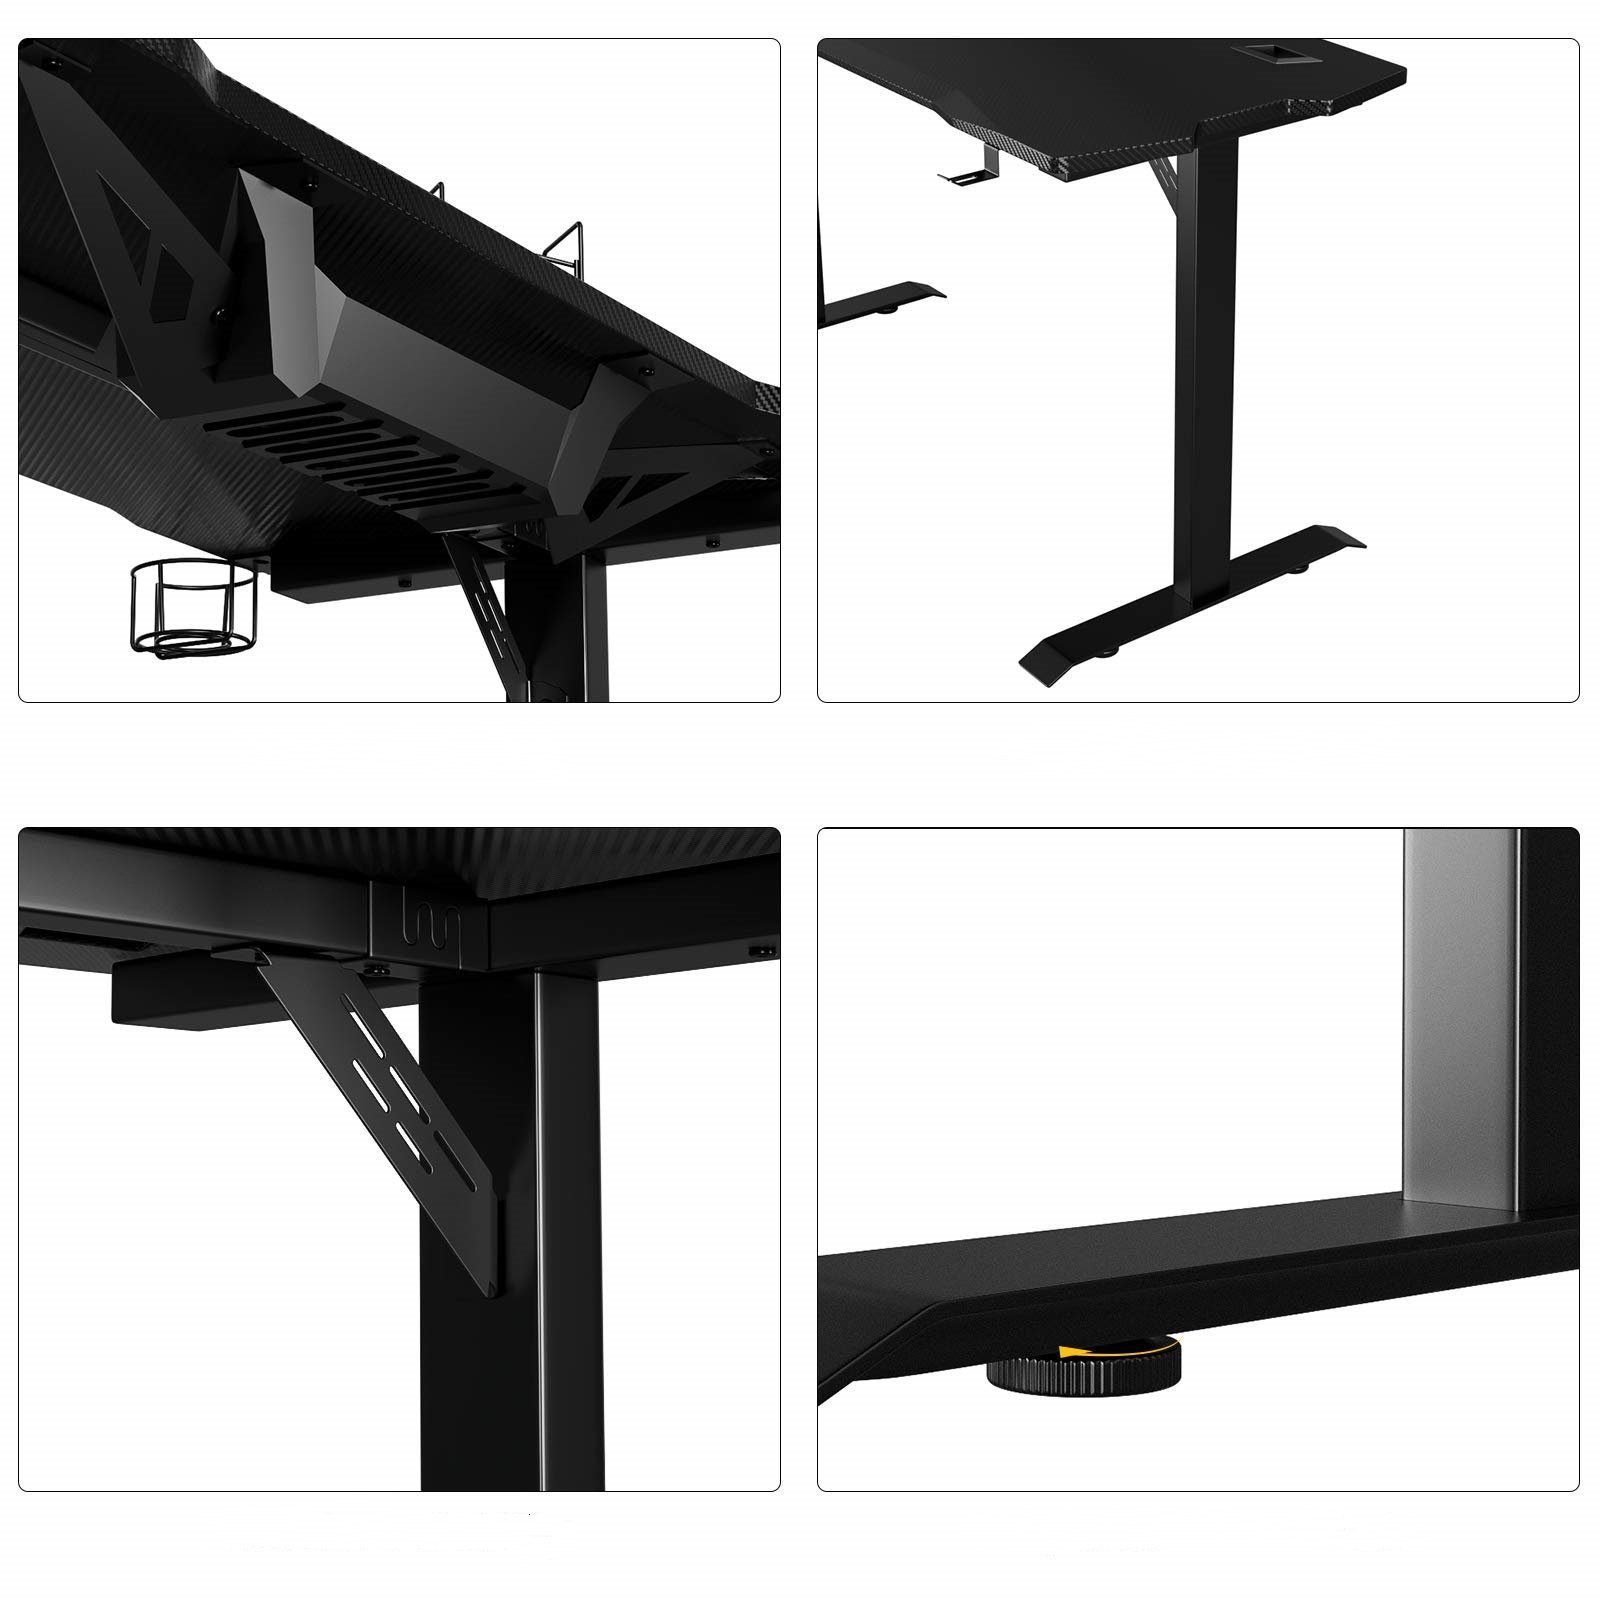 Computertisch, Gamer 140cm Schreibtisch, Mauspad Tisch, Gamingtisch, Homfa schwarz, mit